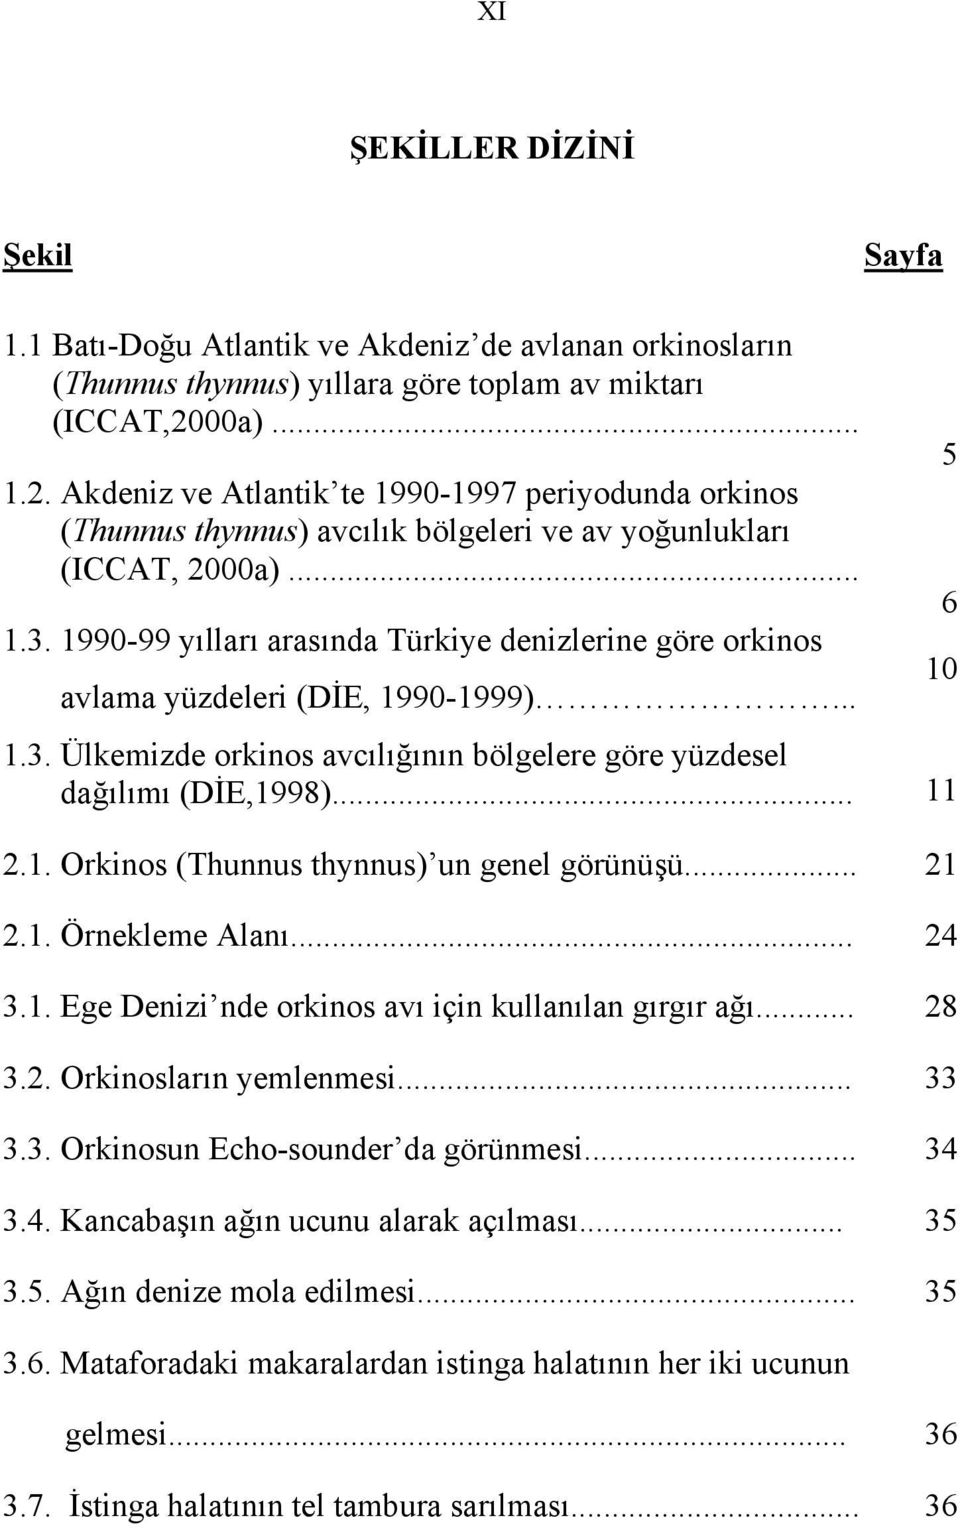 1990-99 yılları arasında Türkiye denizlerine göre orkinos avlama yüzdeleri (DİE, 1990-1999)... 1.3. Ülkemizde orkinos avcılığının bölgelere göre yüzdesel dağılımı (DİE,1998)... 11 2.1. Orkinos (Thunnus thynnus) un genel görünüşü.